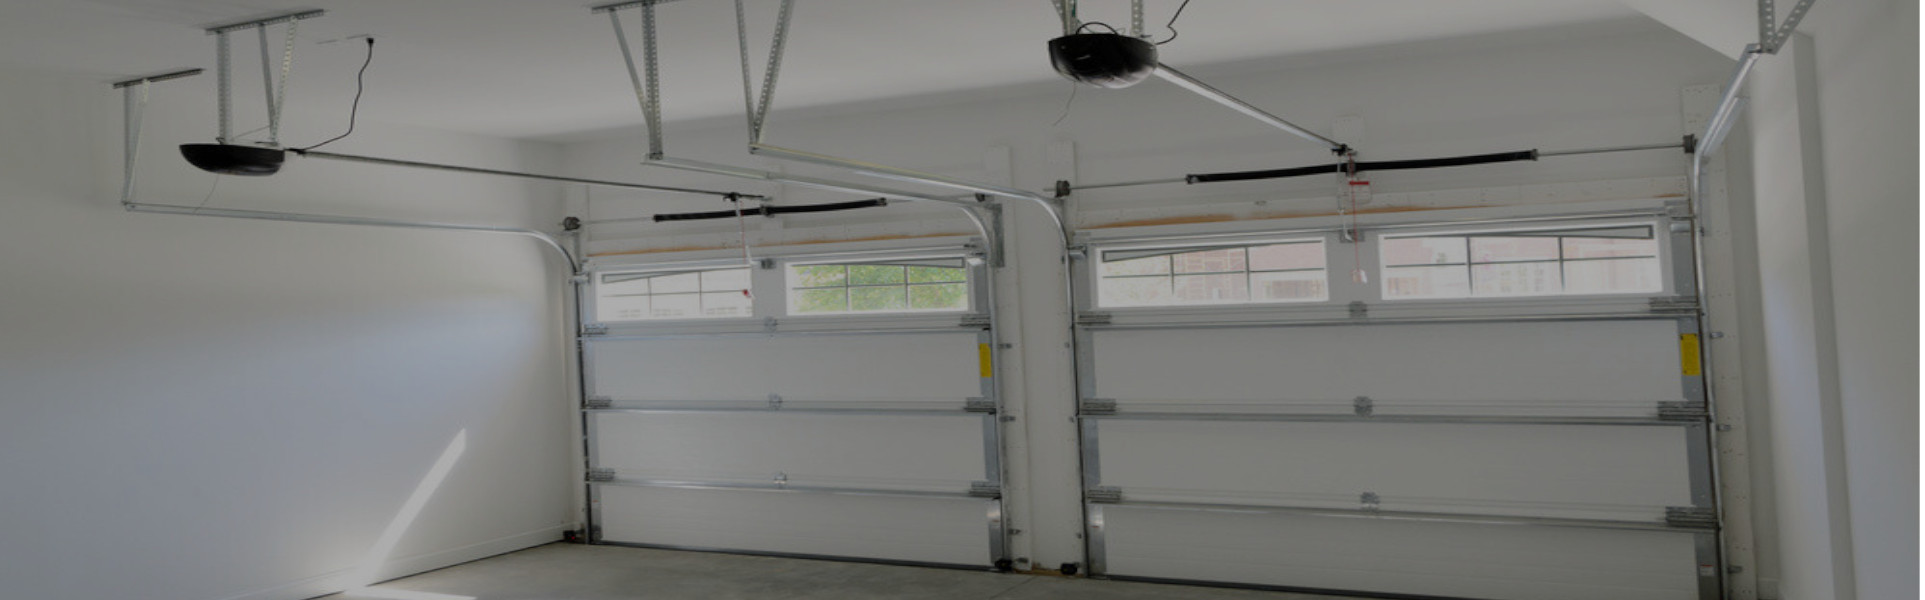 Slider Garage Door Repair, Glaziers in Westcombe Park, SE3